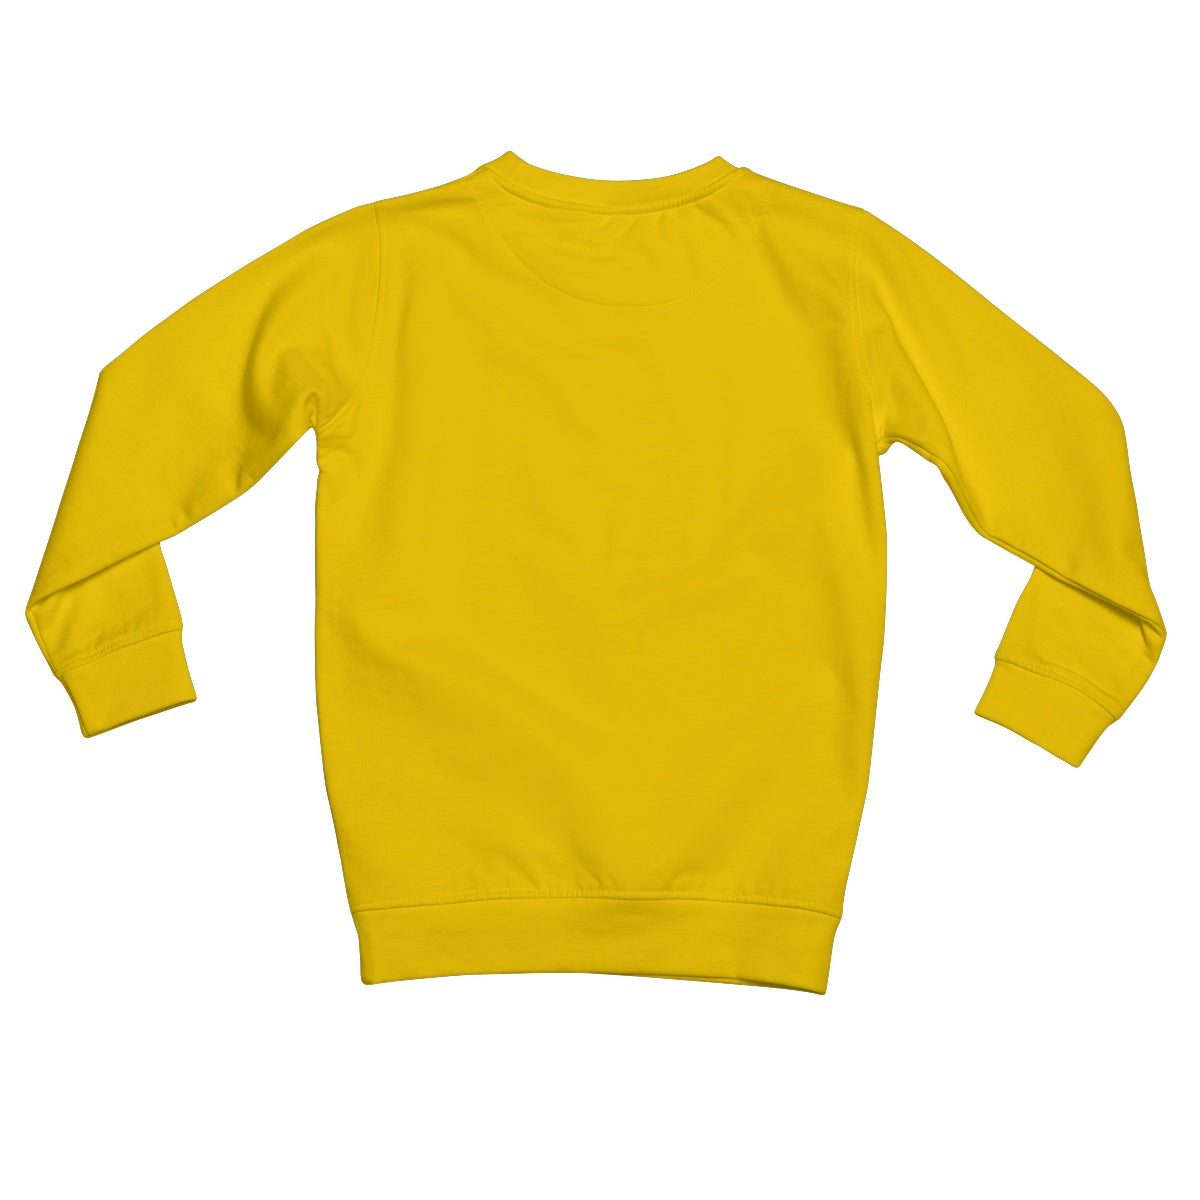 The Walross Kids Sweatshirt.